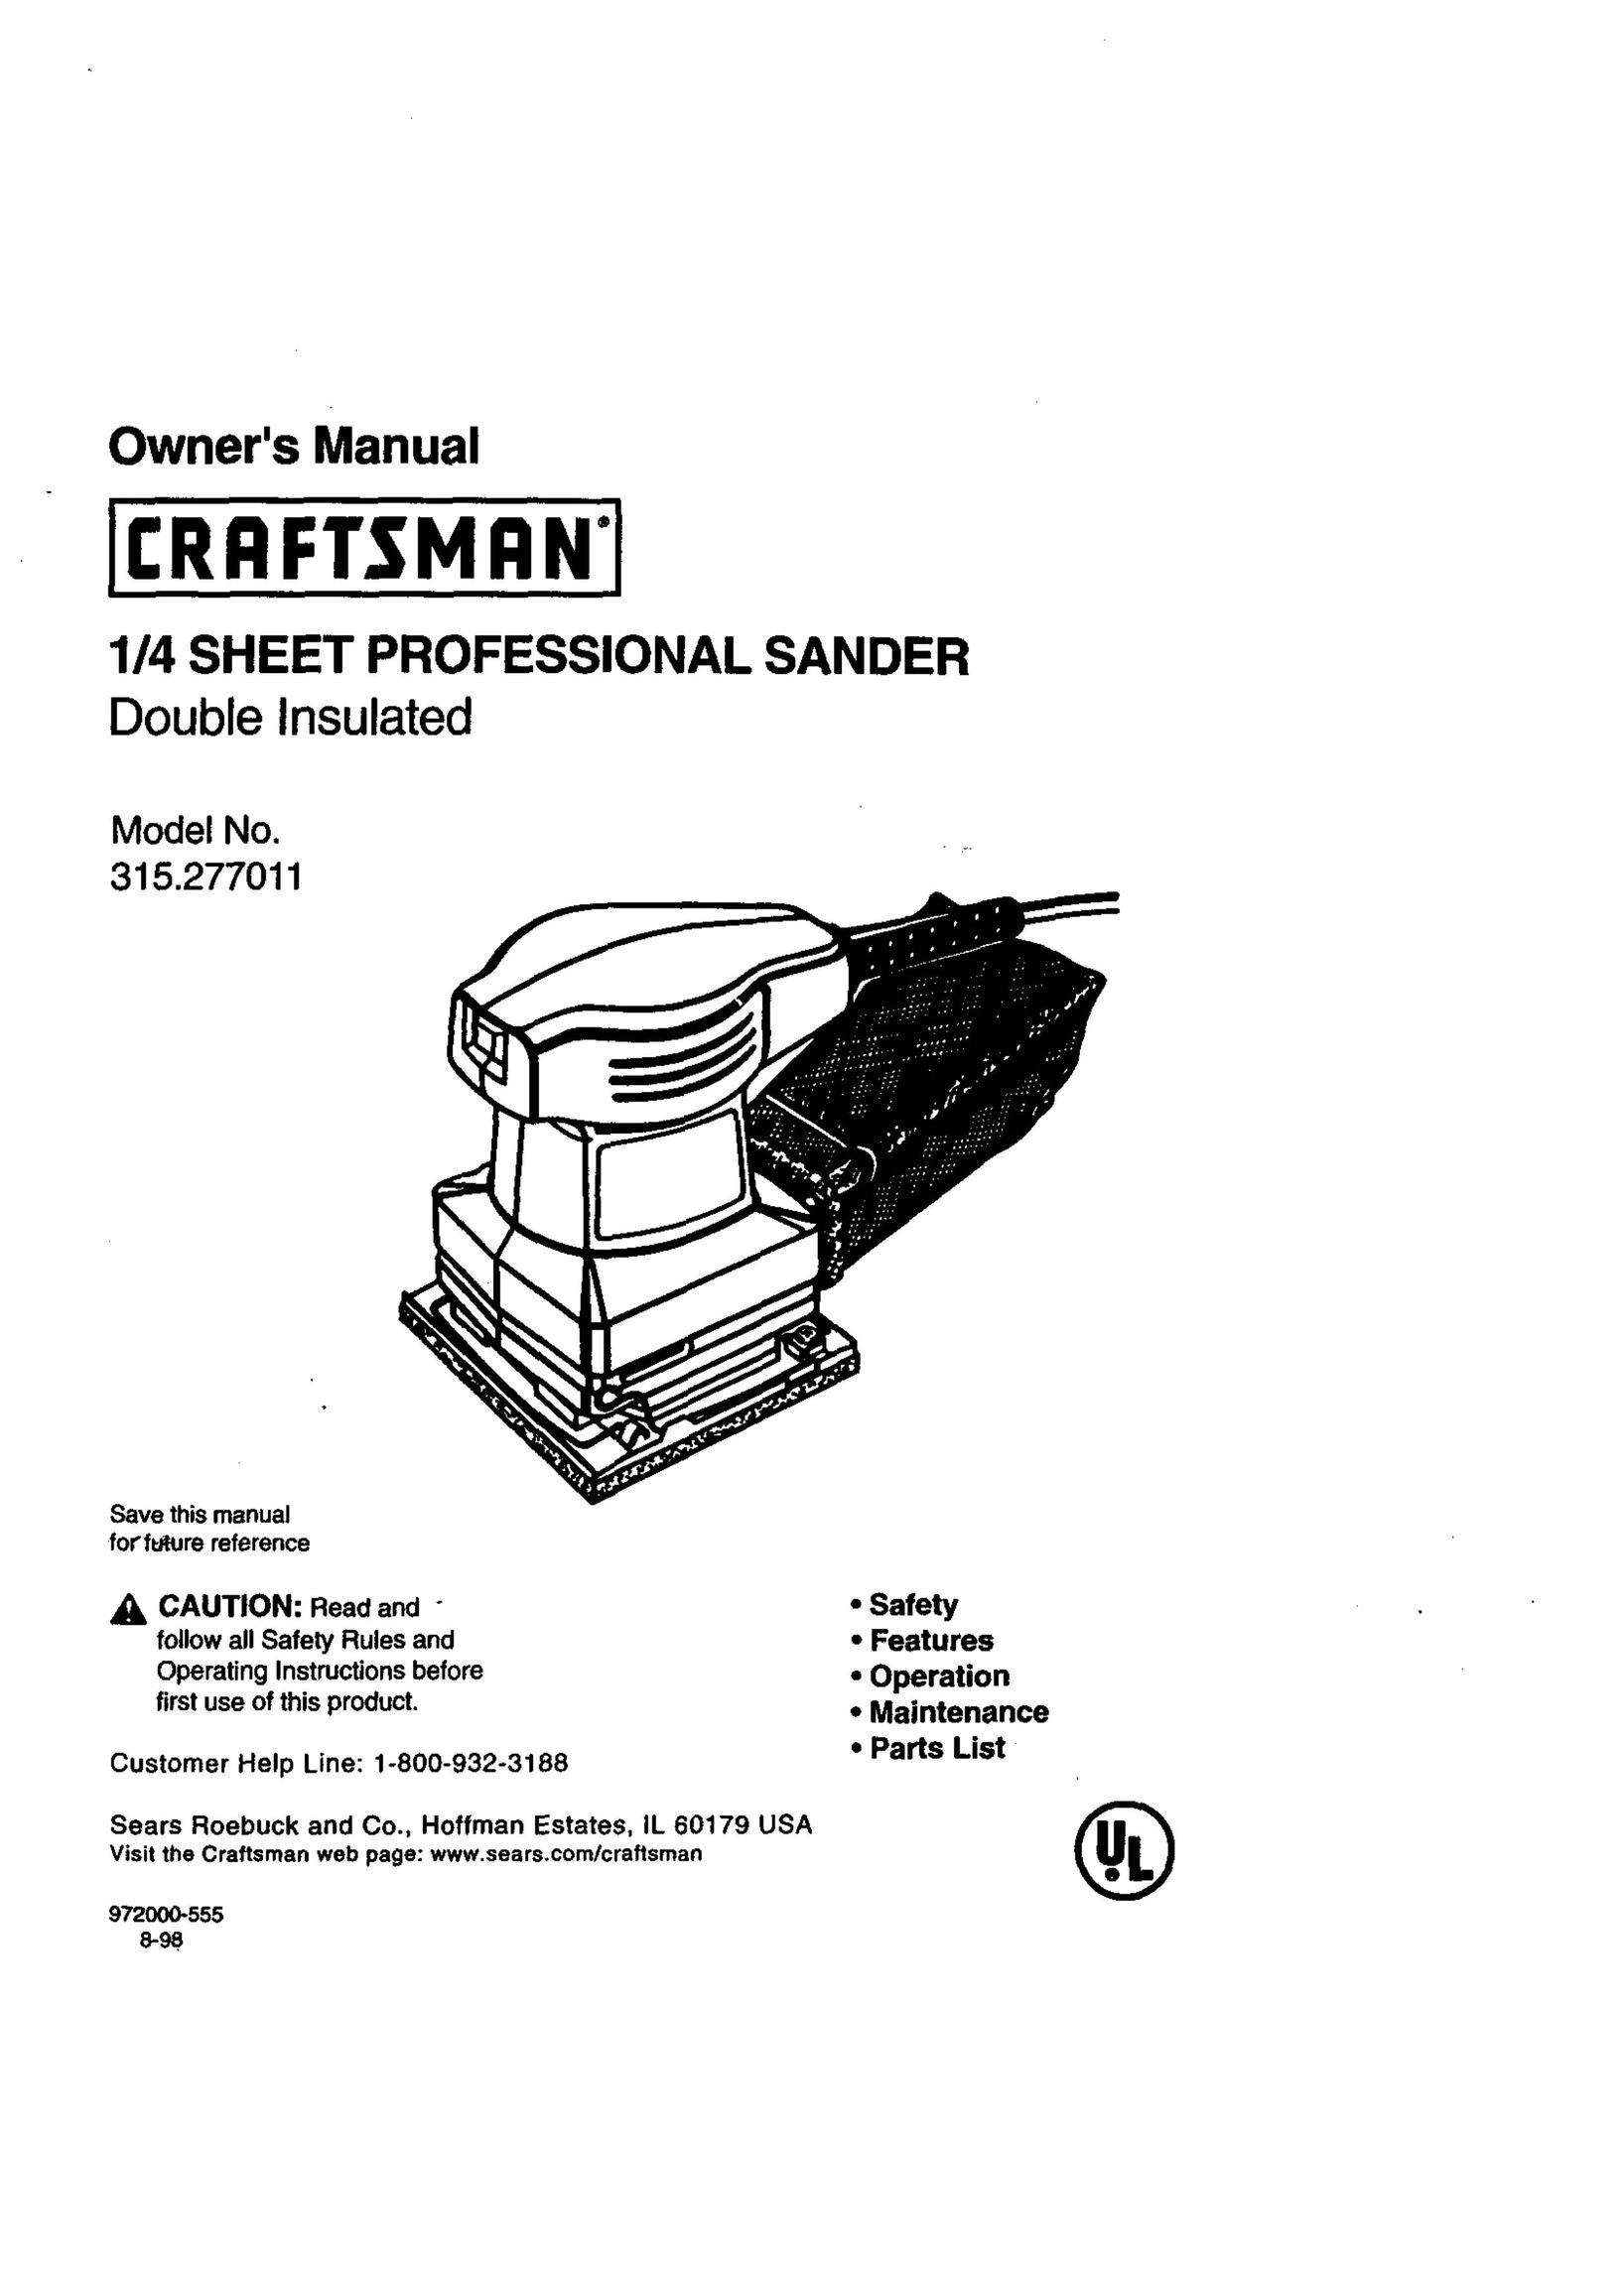 Craftsman 315.277011 Sander User Manual